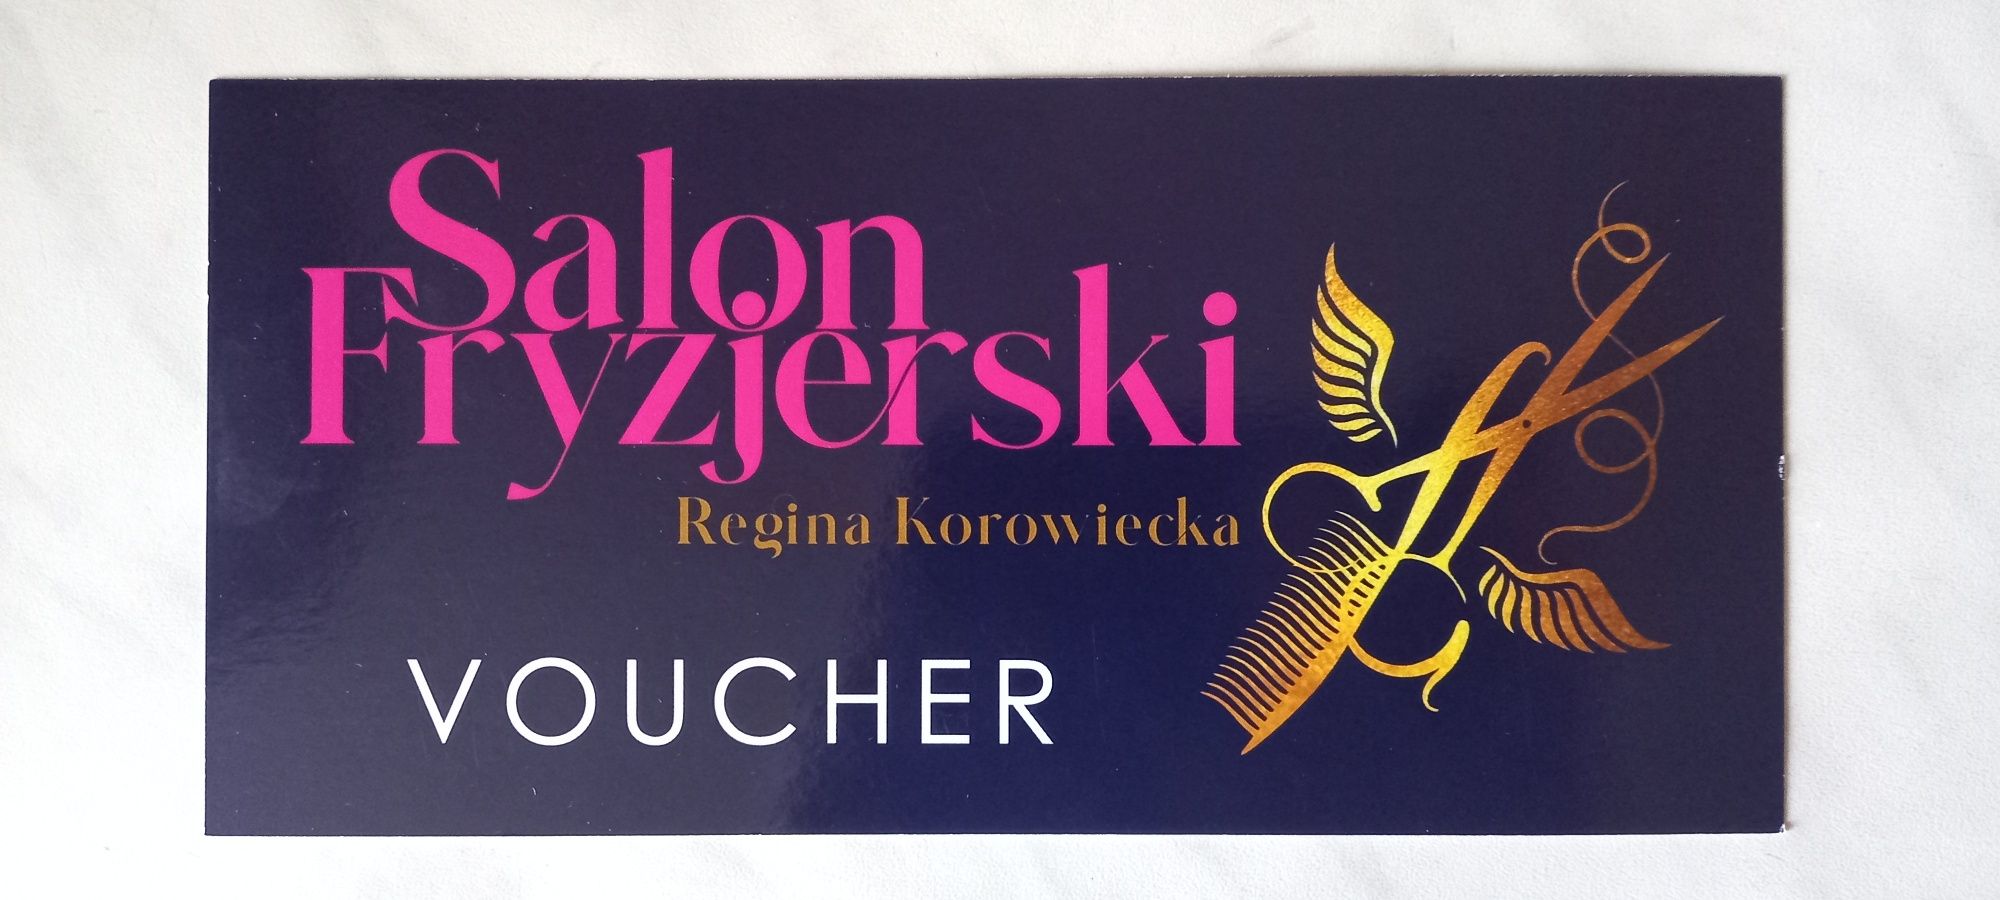 Voucher Salon Fryzjerski Regina Korowiecka